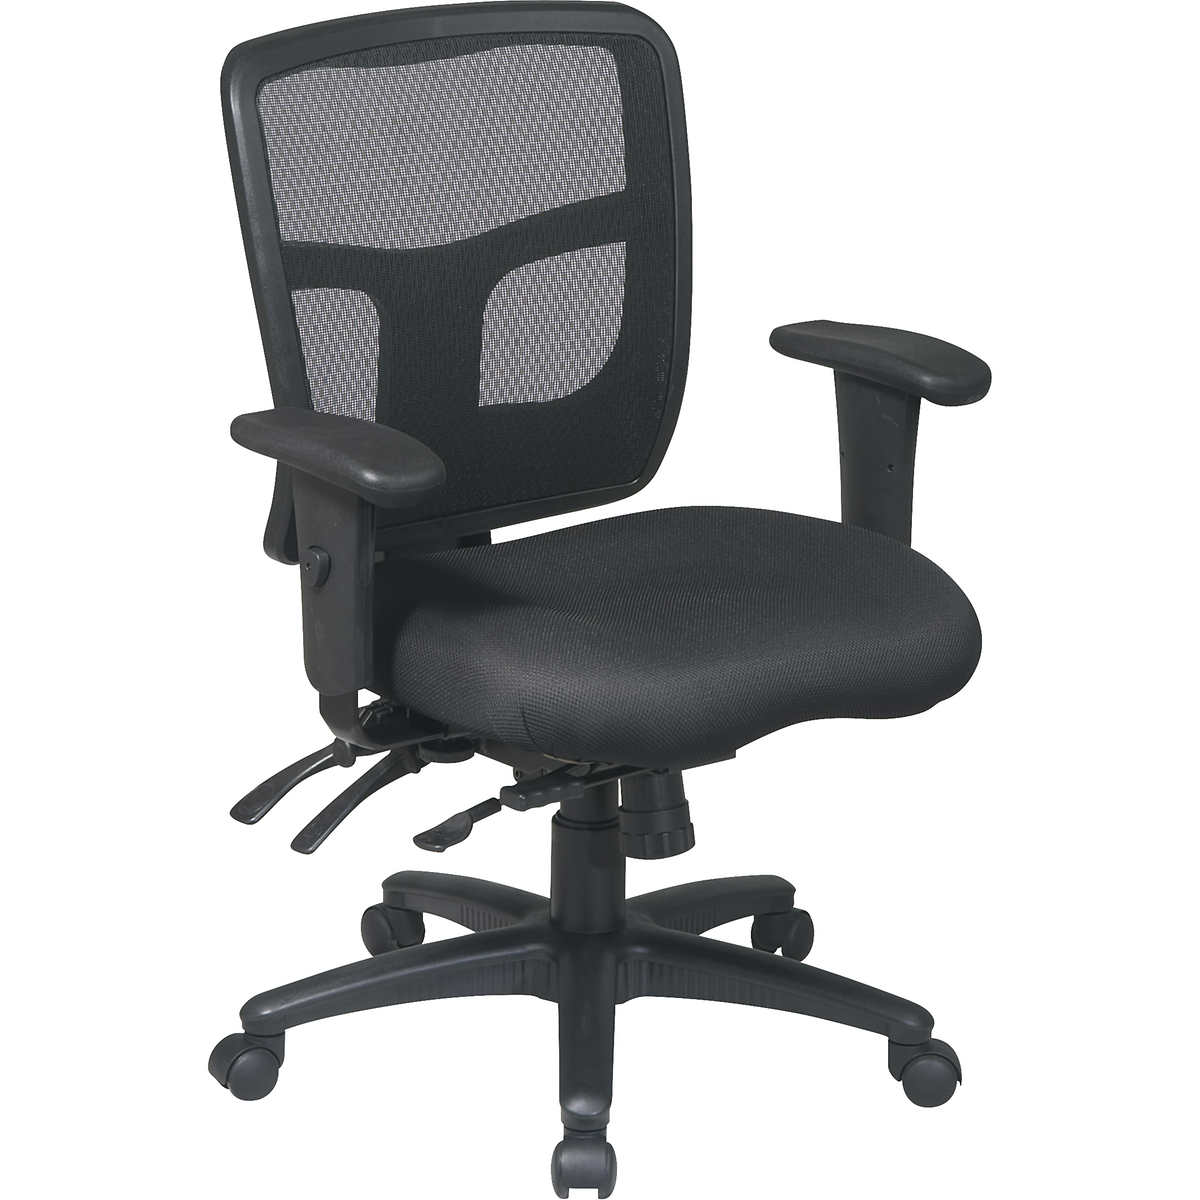 Bayside Furnishings Corc 8b Metrex Ii Black Mesh Office Chair Costco Weekender